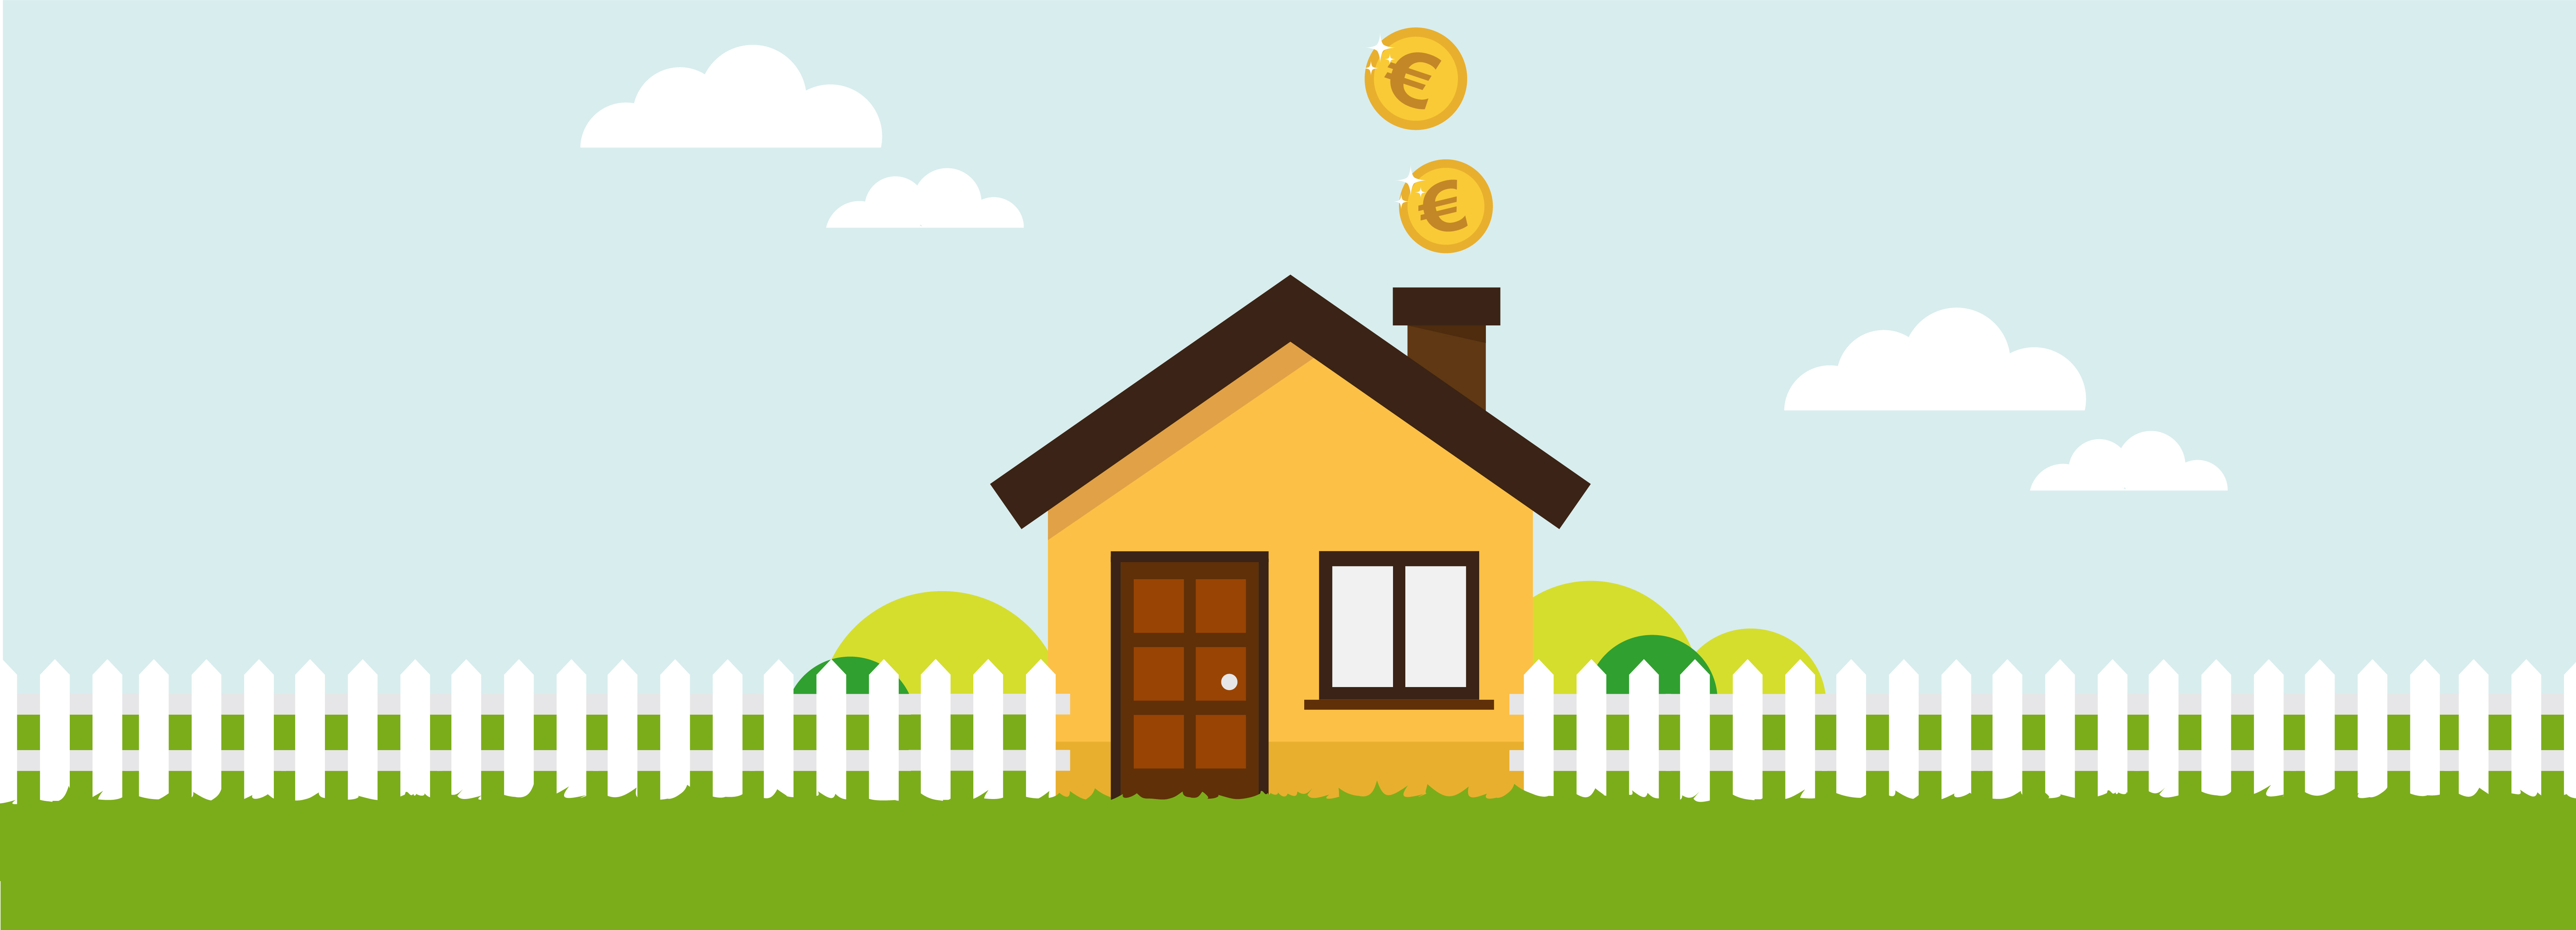 Mutui: le previsioni 2018 su tassi ed erogazioni